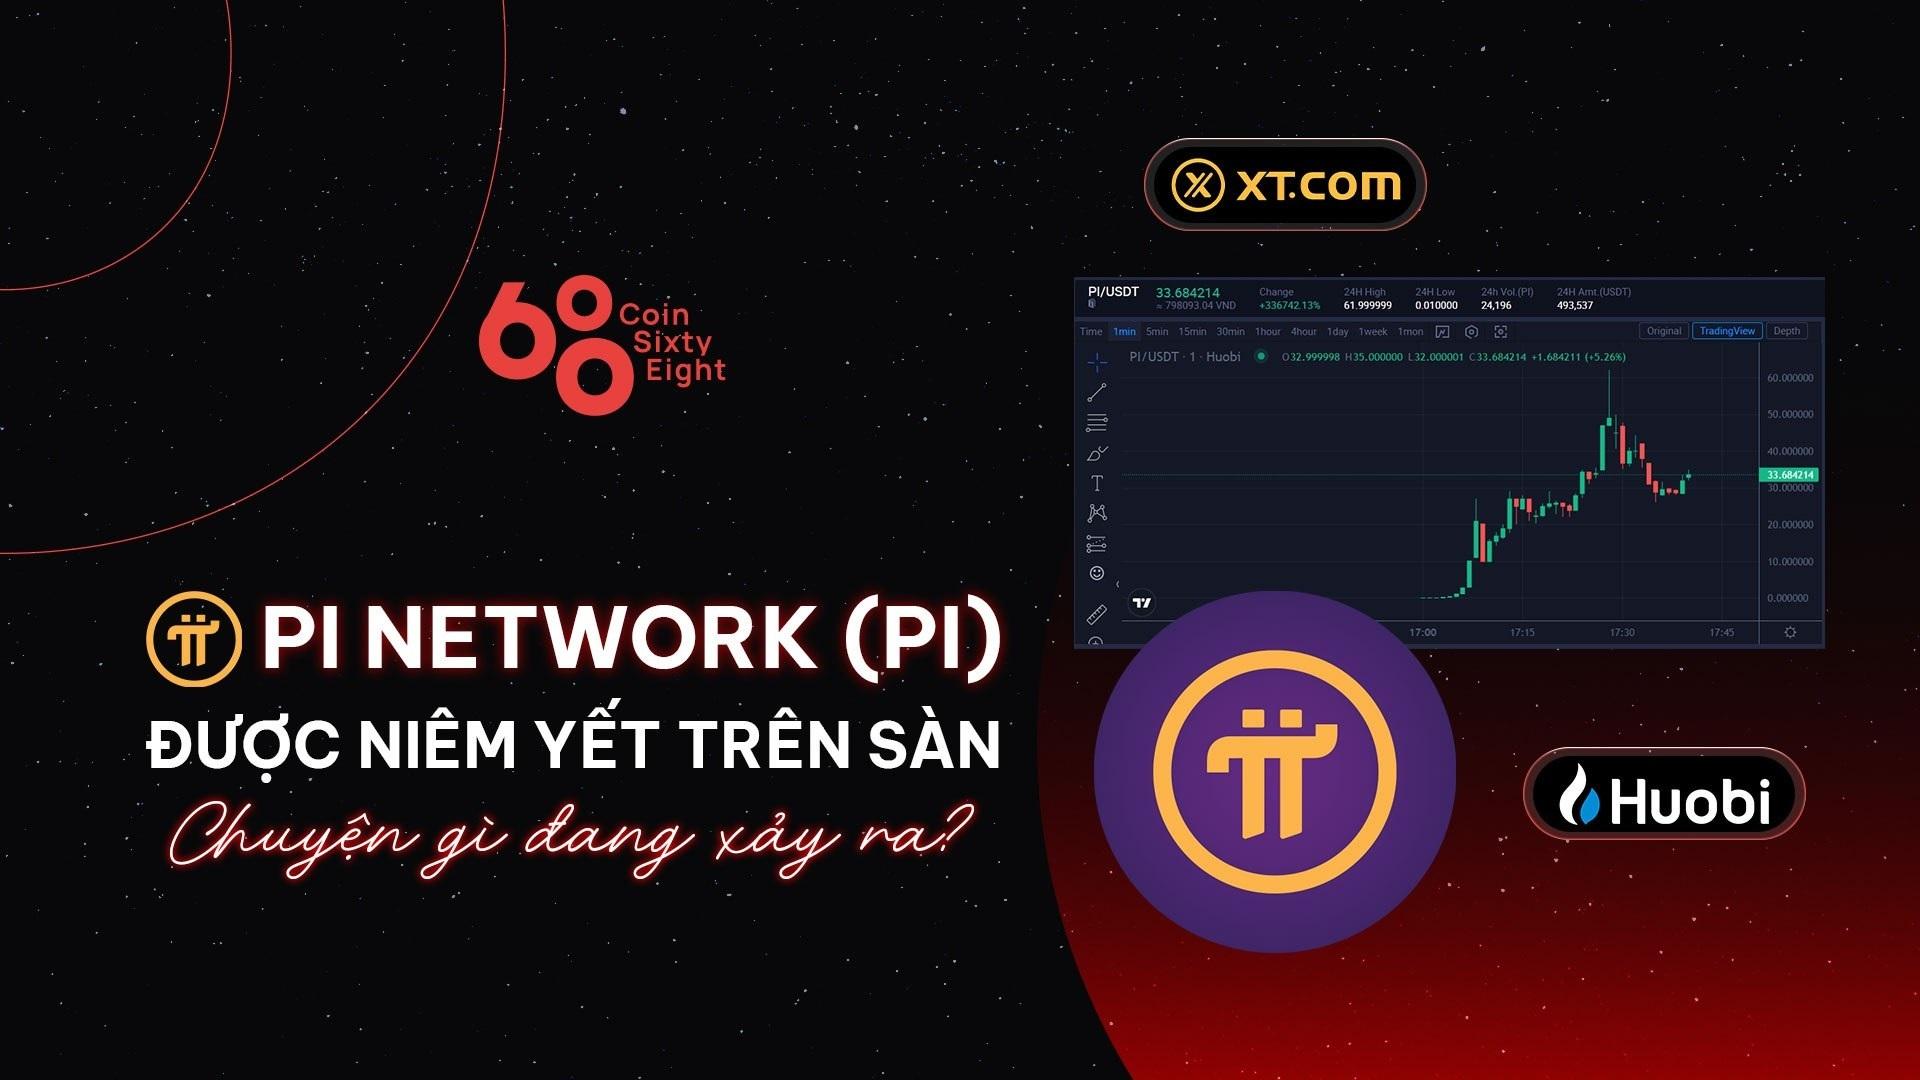 pi-network-pi-duoc-niem-yet-tren-san-chuyen-gi-dang-xay-ra